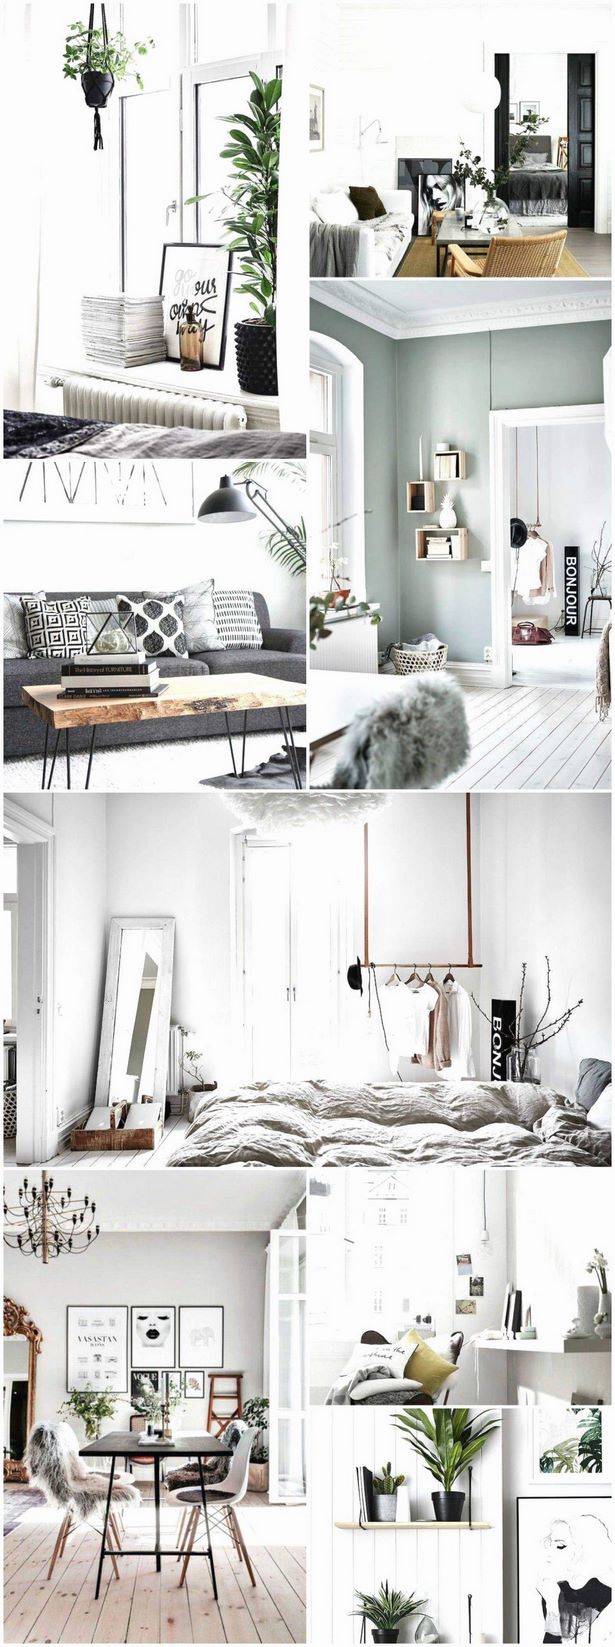 Ikea kleines wohnzimmer